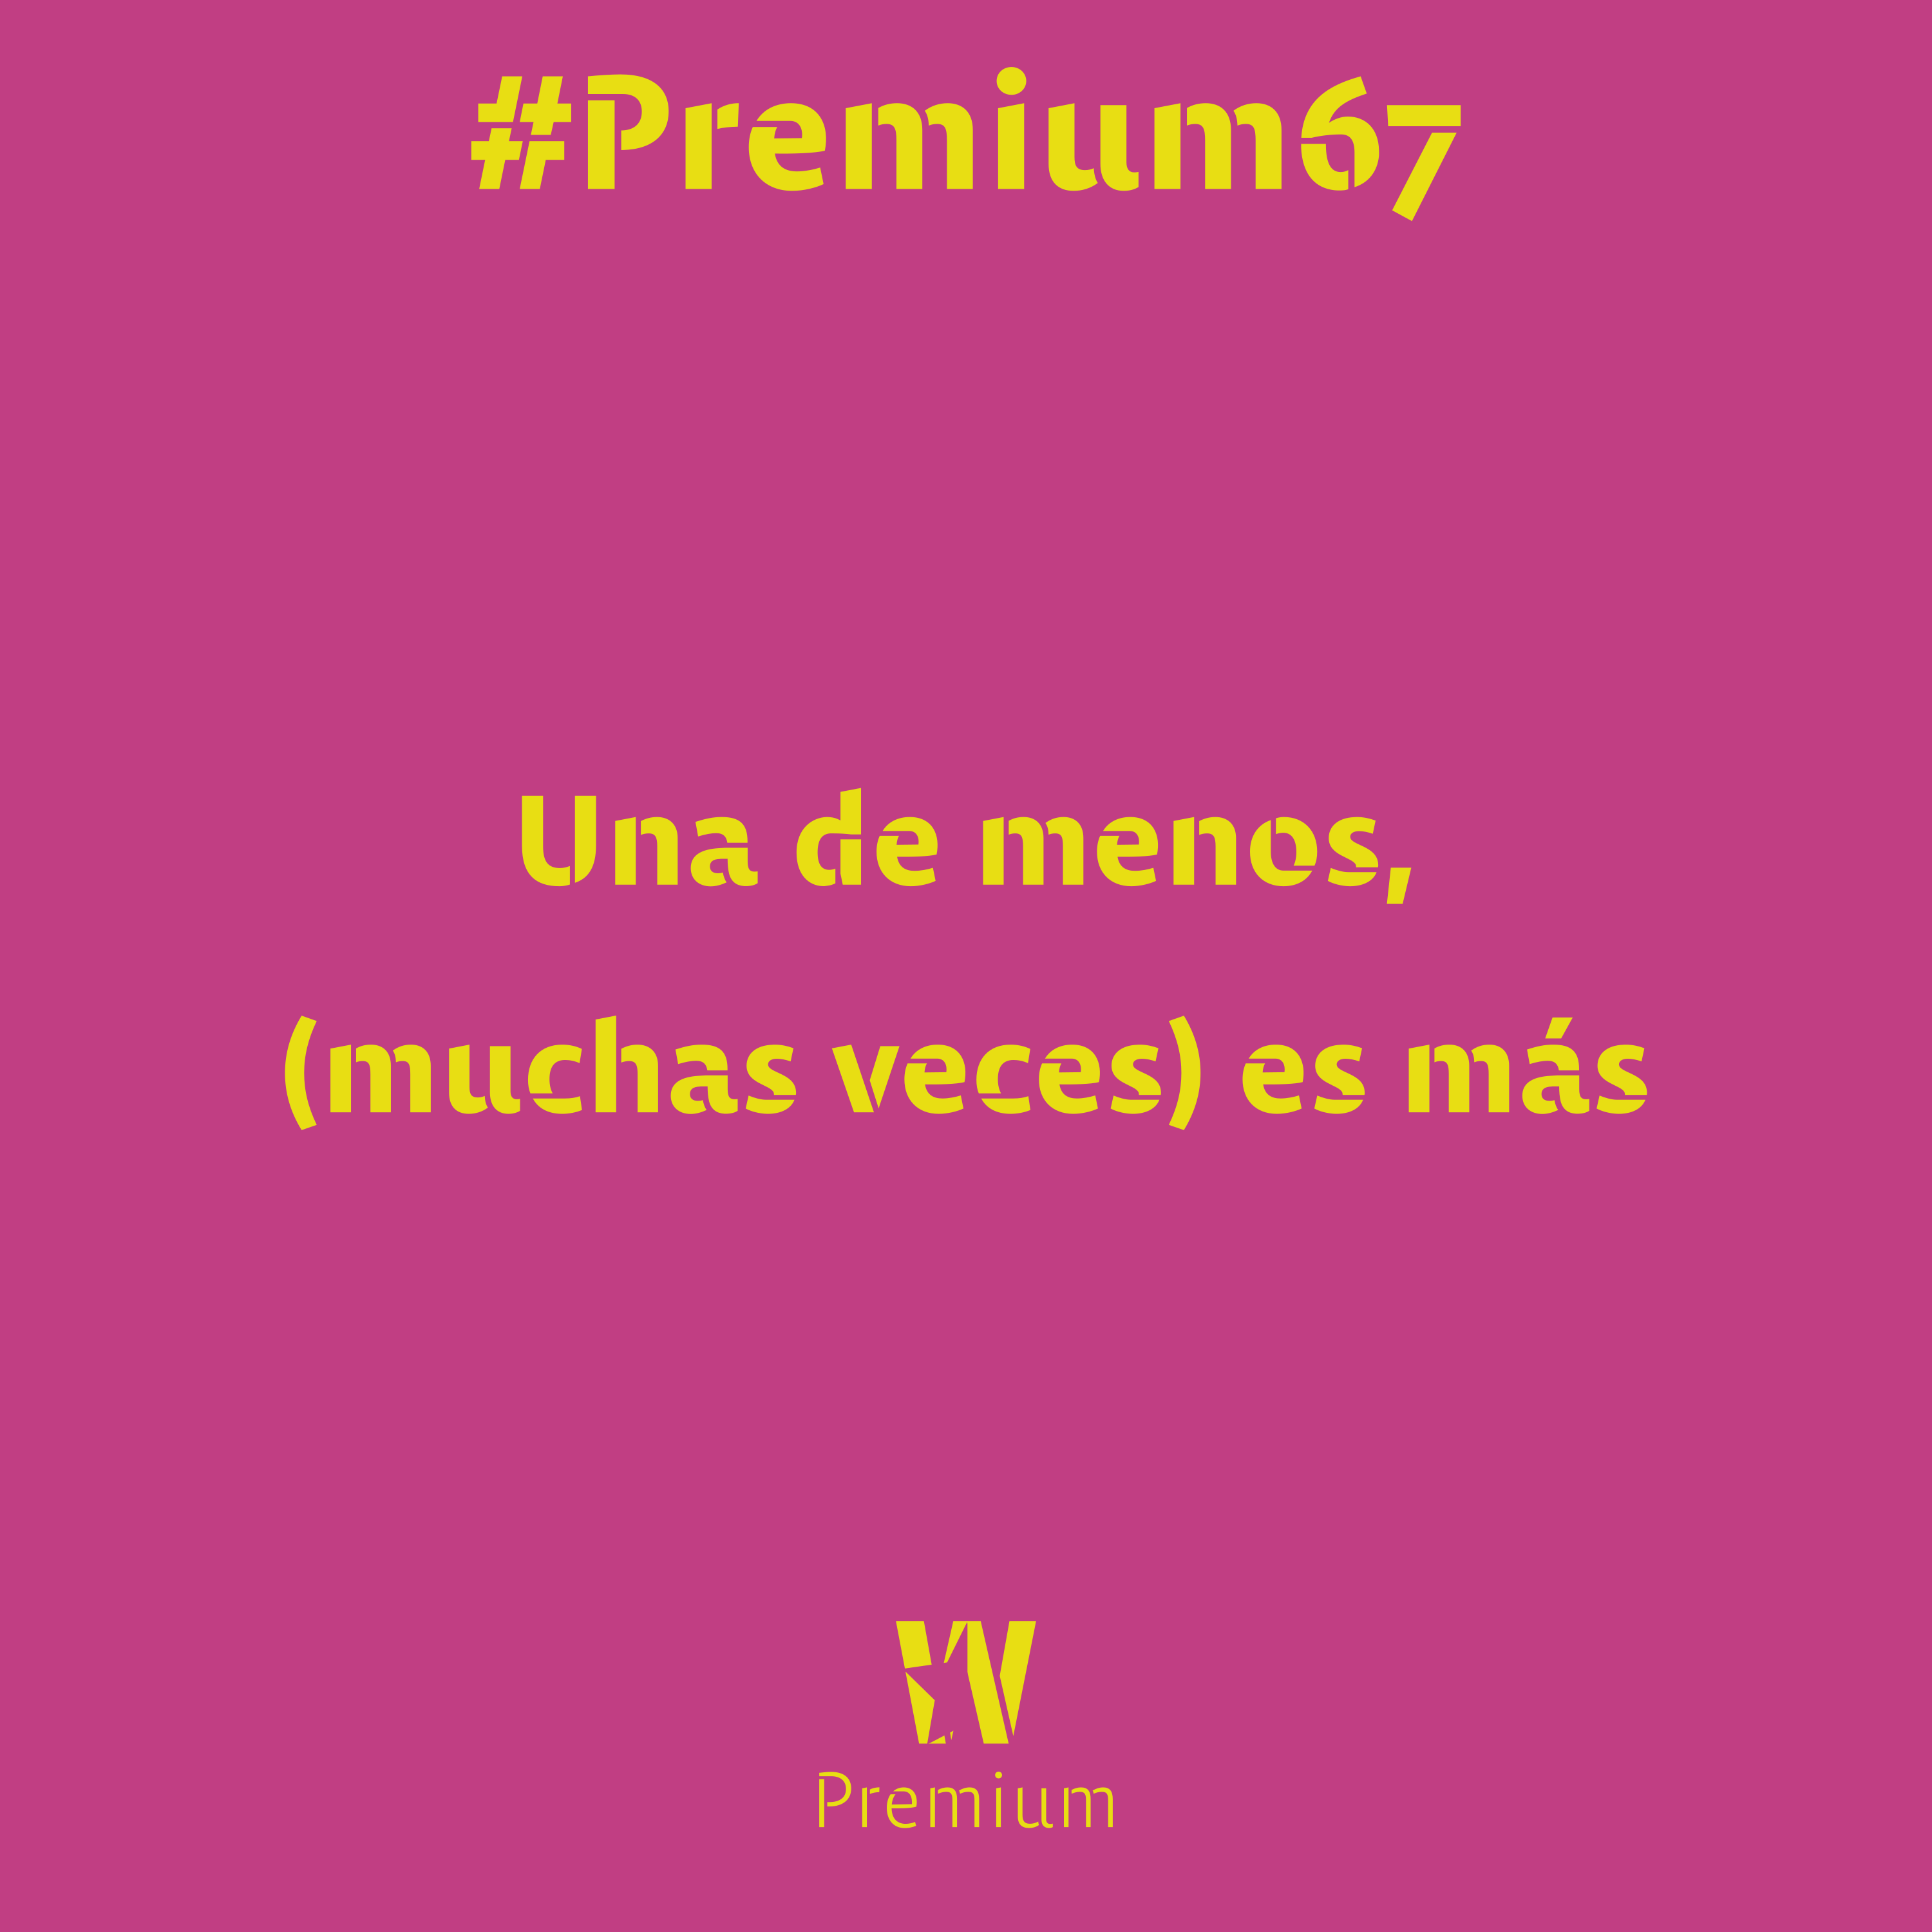 #Premium67 - Una de menos, (muchas veces) es más